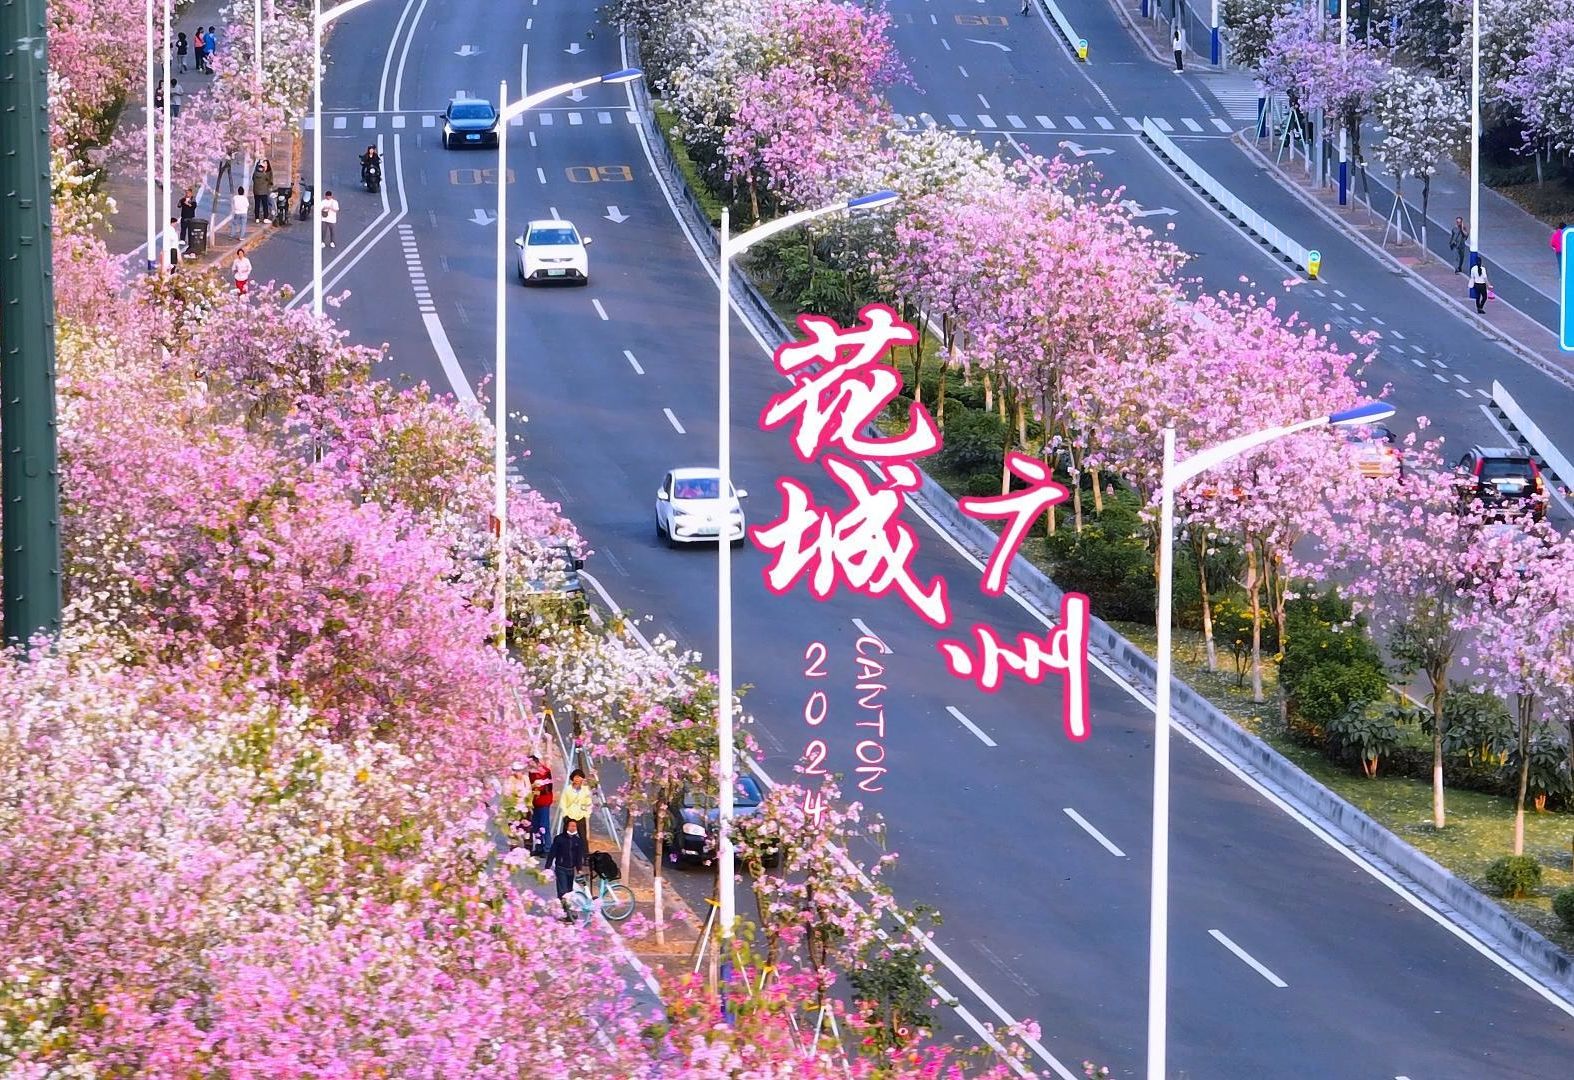 又到了广州花开满城的最美季节，接下来半个月的广州将会再次变成童话仙境，美到窒息！